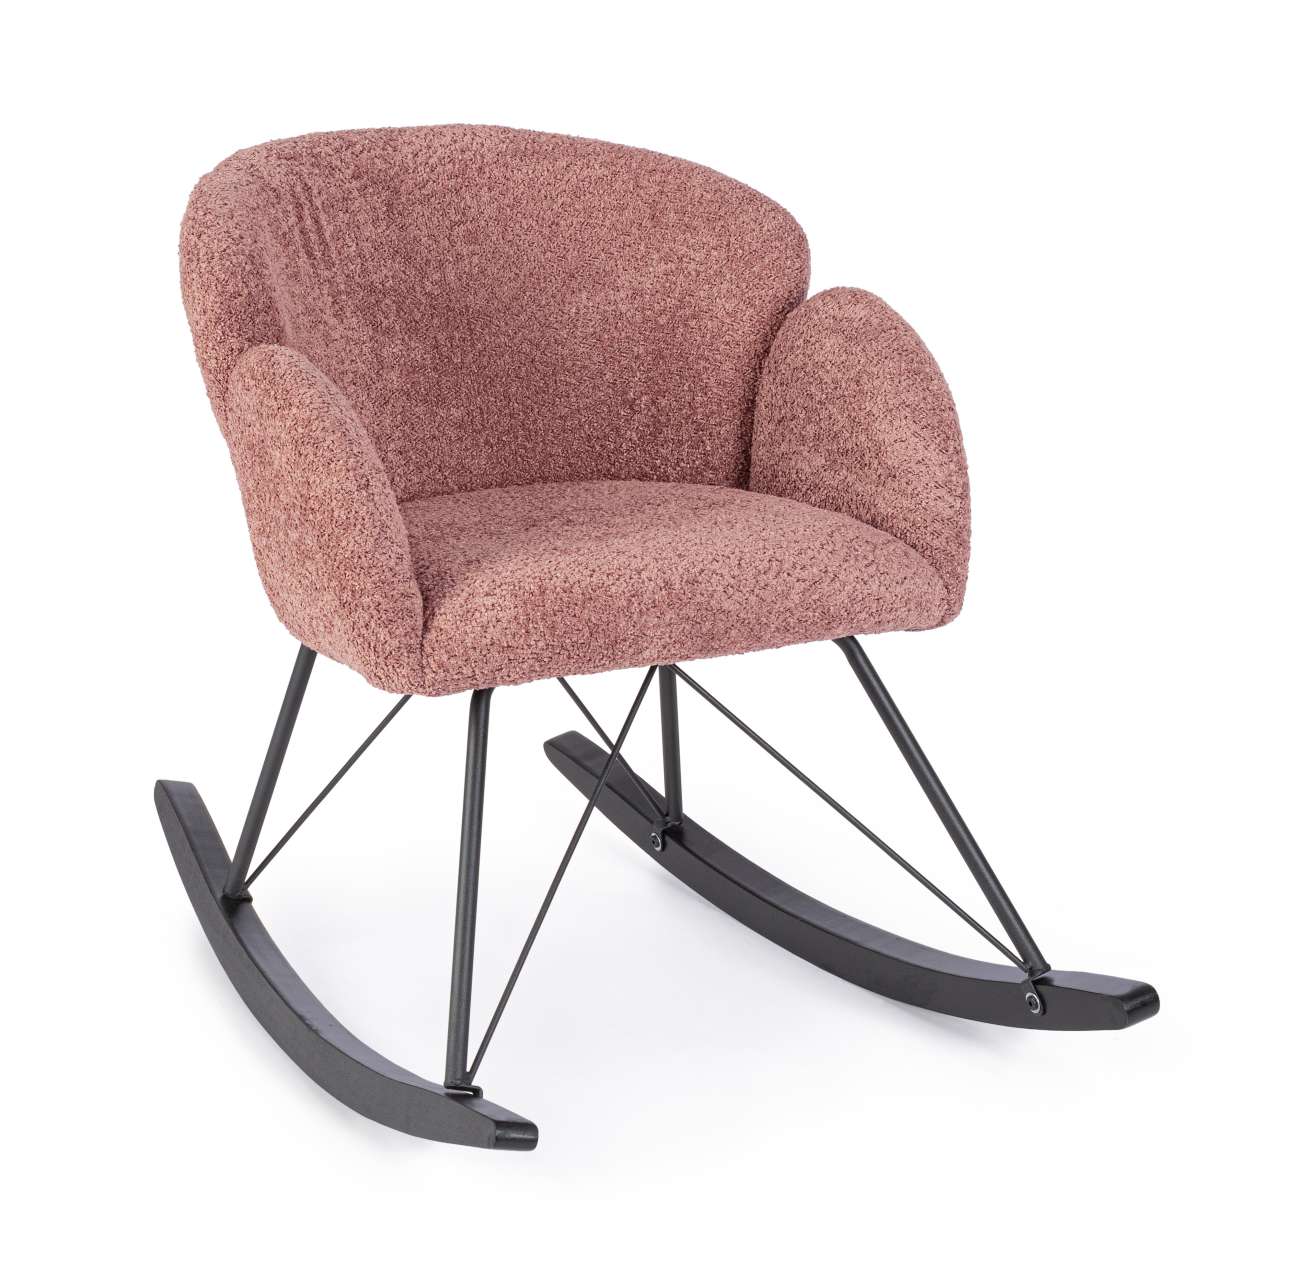 Der Schaukelsessel Sibilla überzeugt mit seinem modernen Stil. Gefertigt wurde er aus Stoff, welcher einen roten Farbton besitzt. Das Gestell ist aus Metall und hat eine schwarze Farbe. Der Sessel besitzt eine Sitzhöhe von 48 cm.